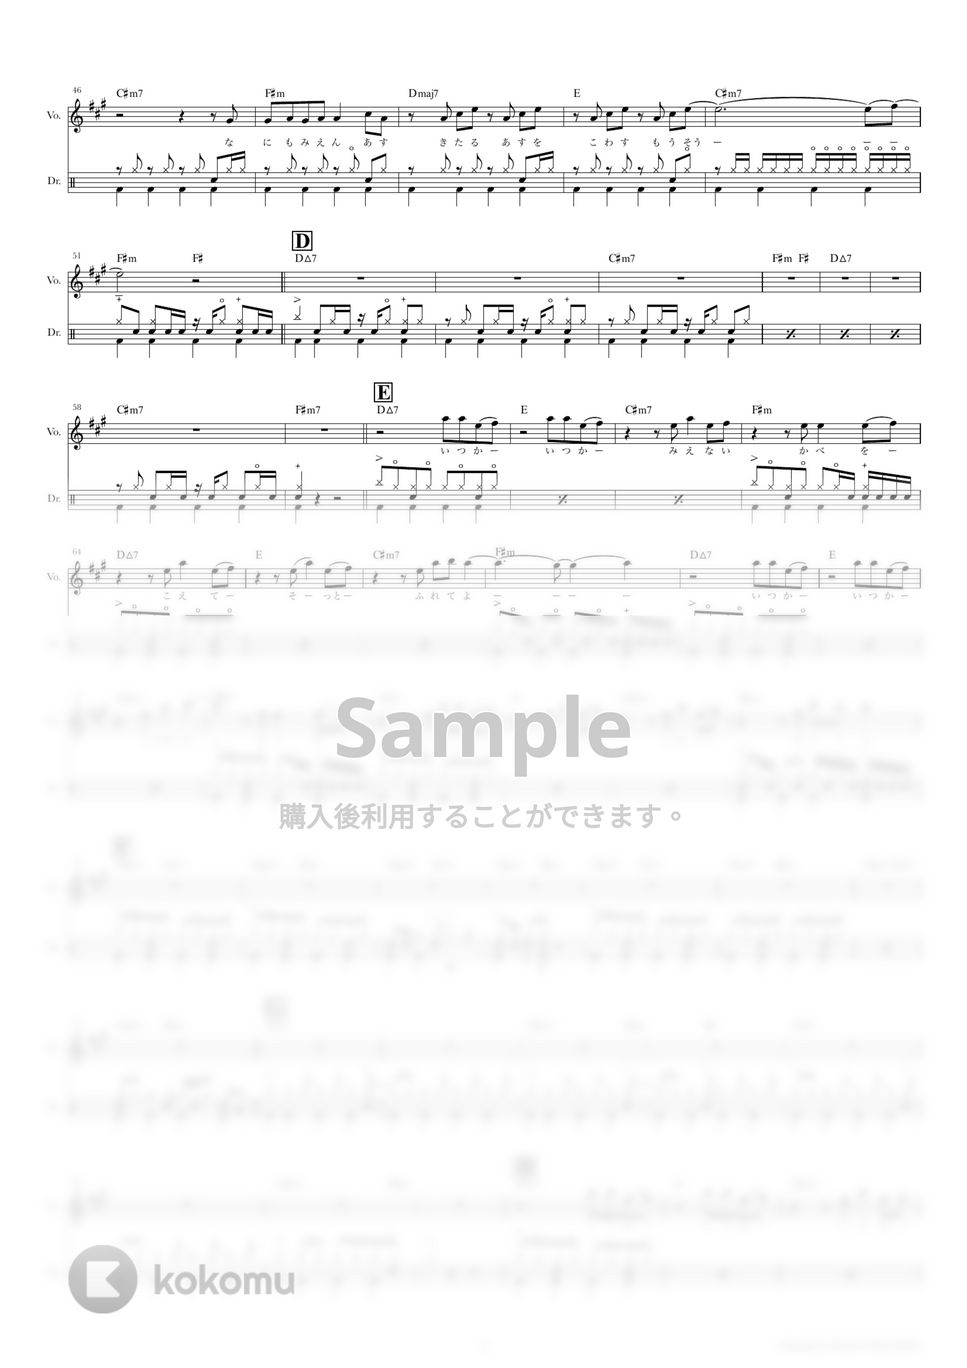 きのこ帝国 - You outside my Window (ドラムスコア・歌詞・コード付き) by TRIAD GUITAR SCHOOL